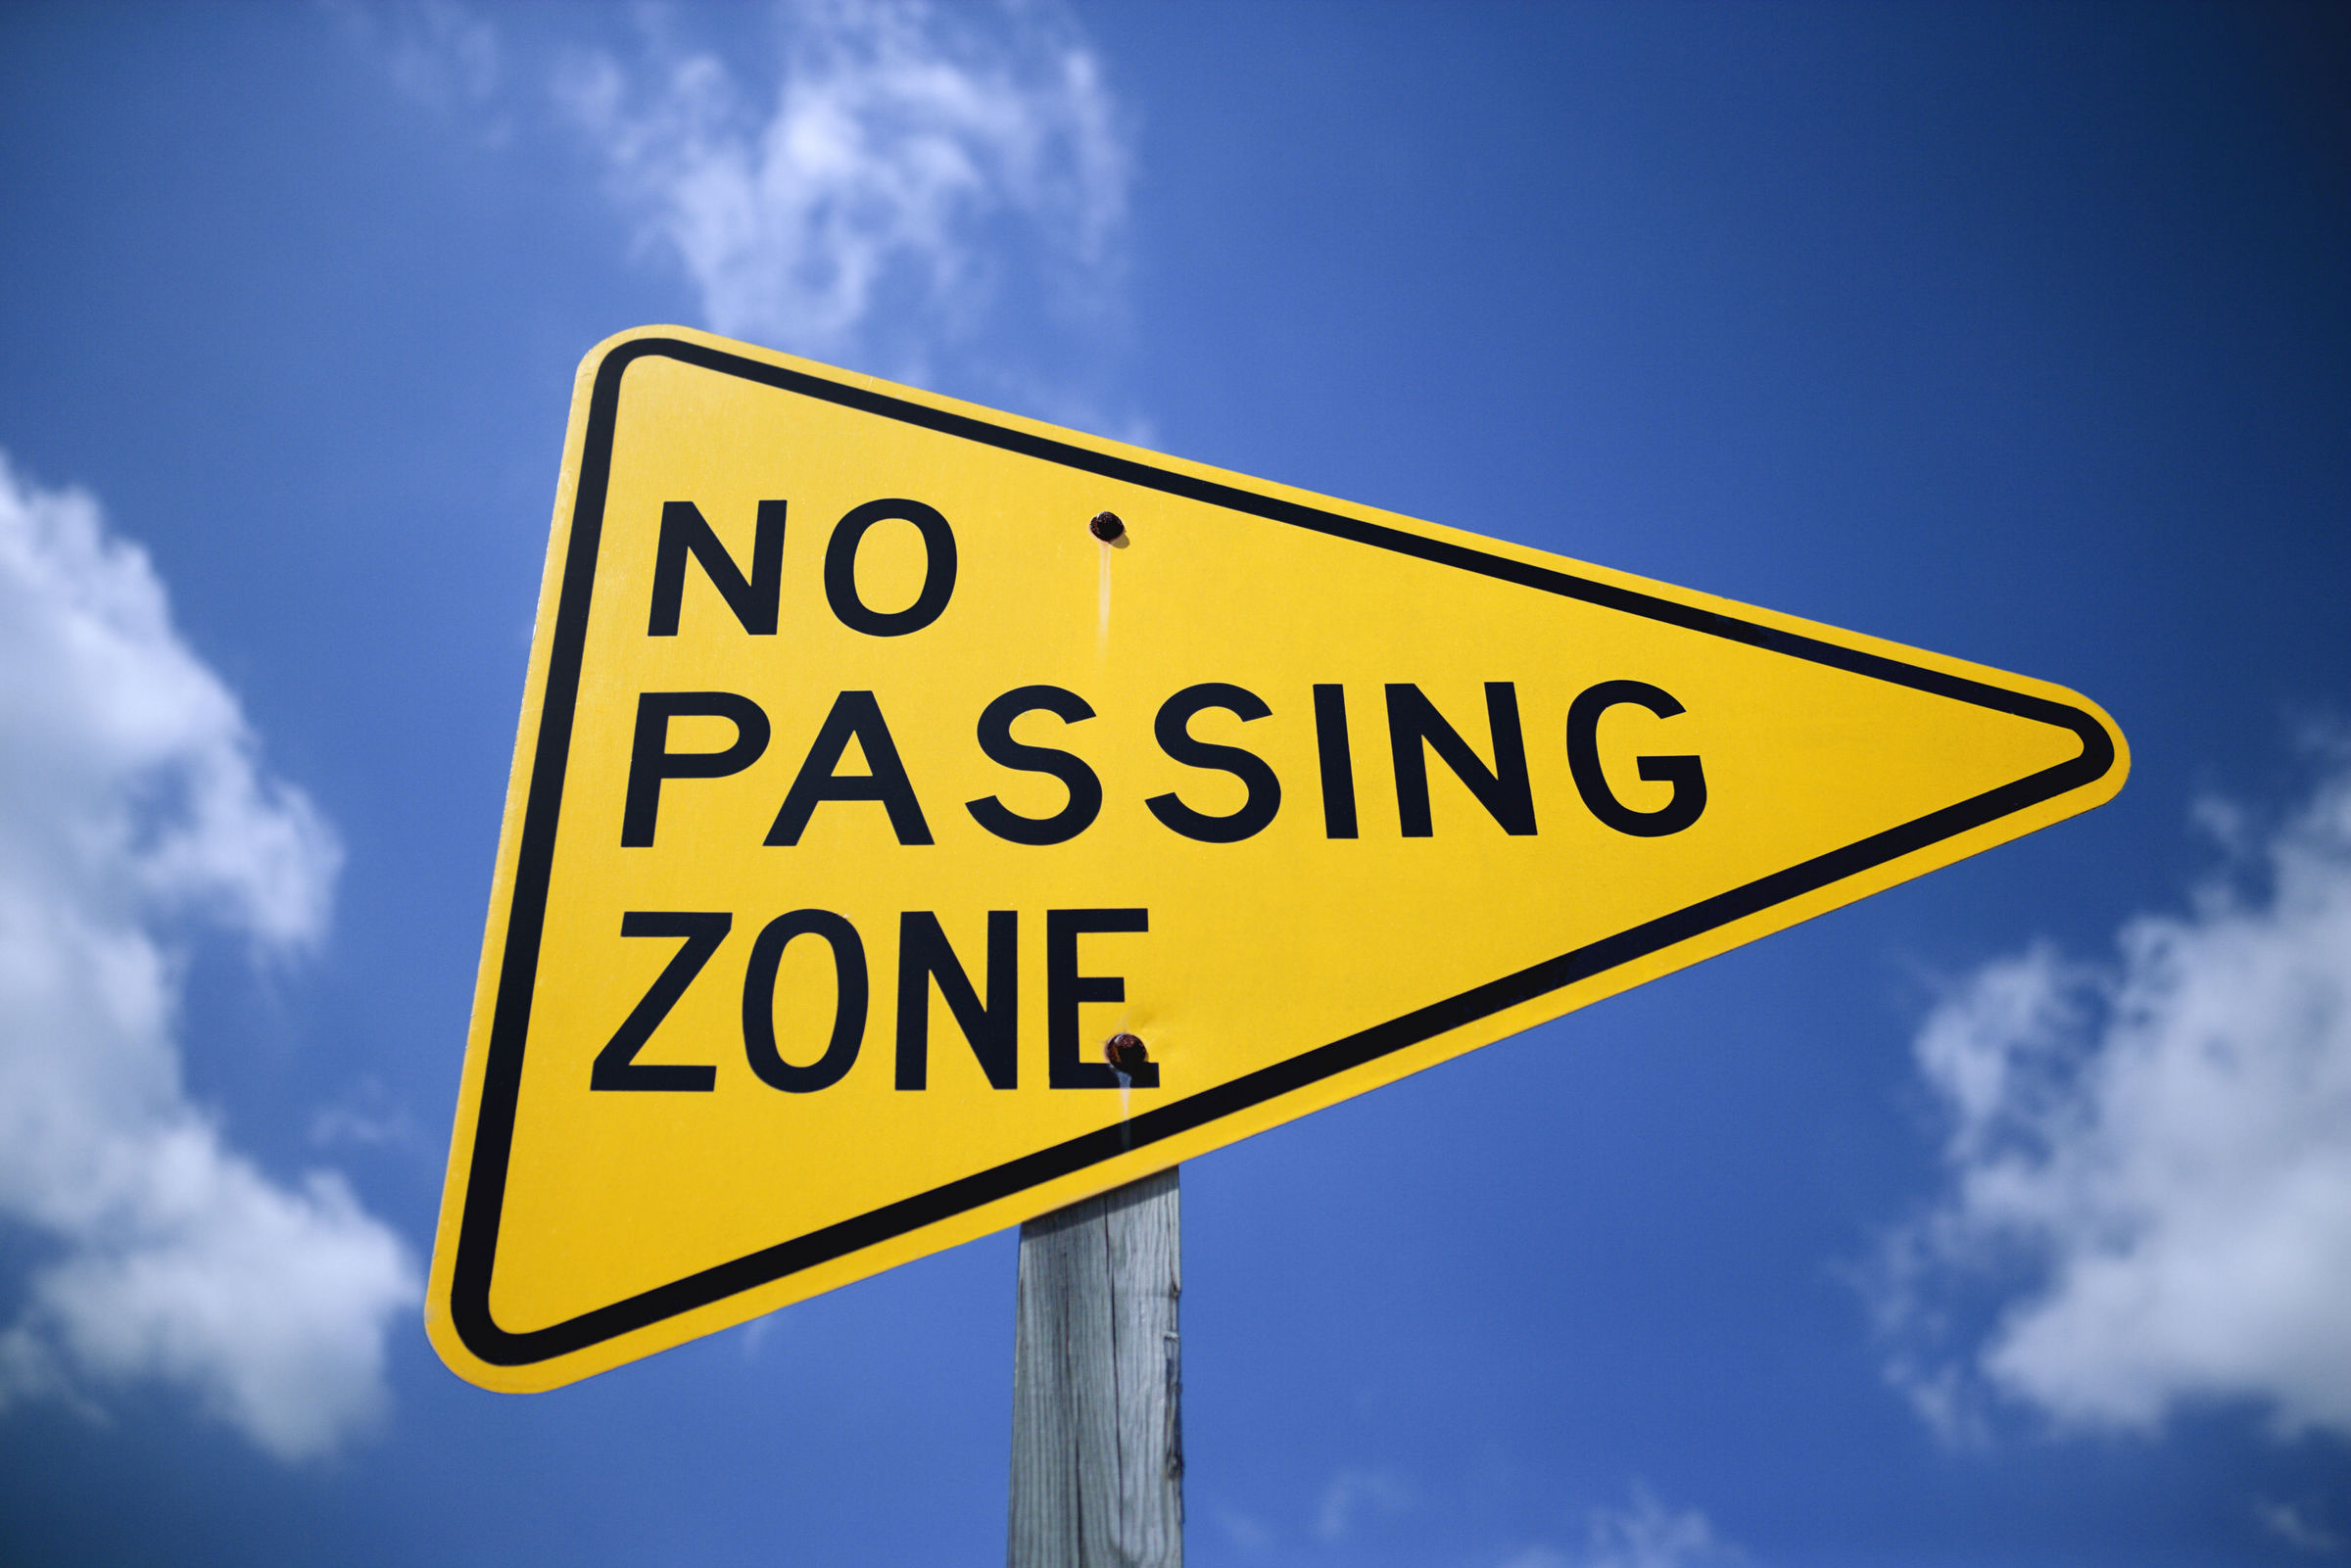 No passing zone, Quelle: photos.com